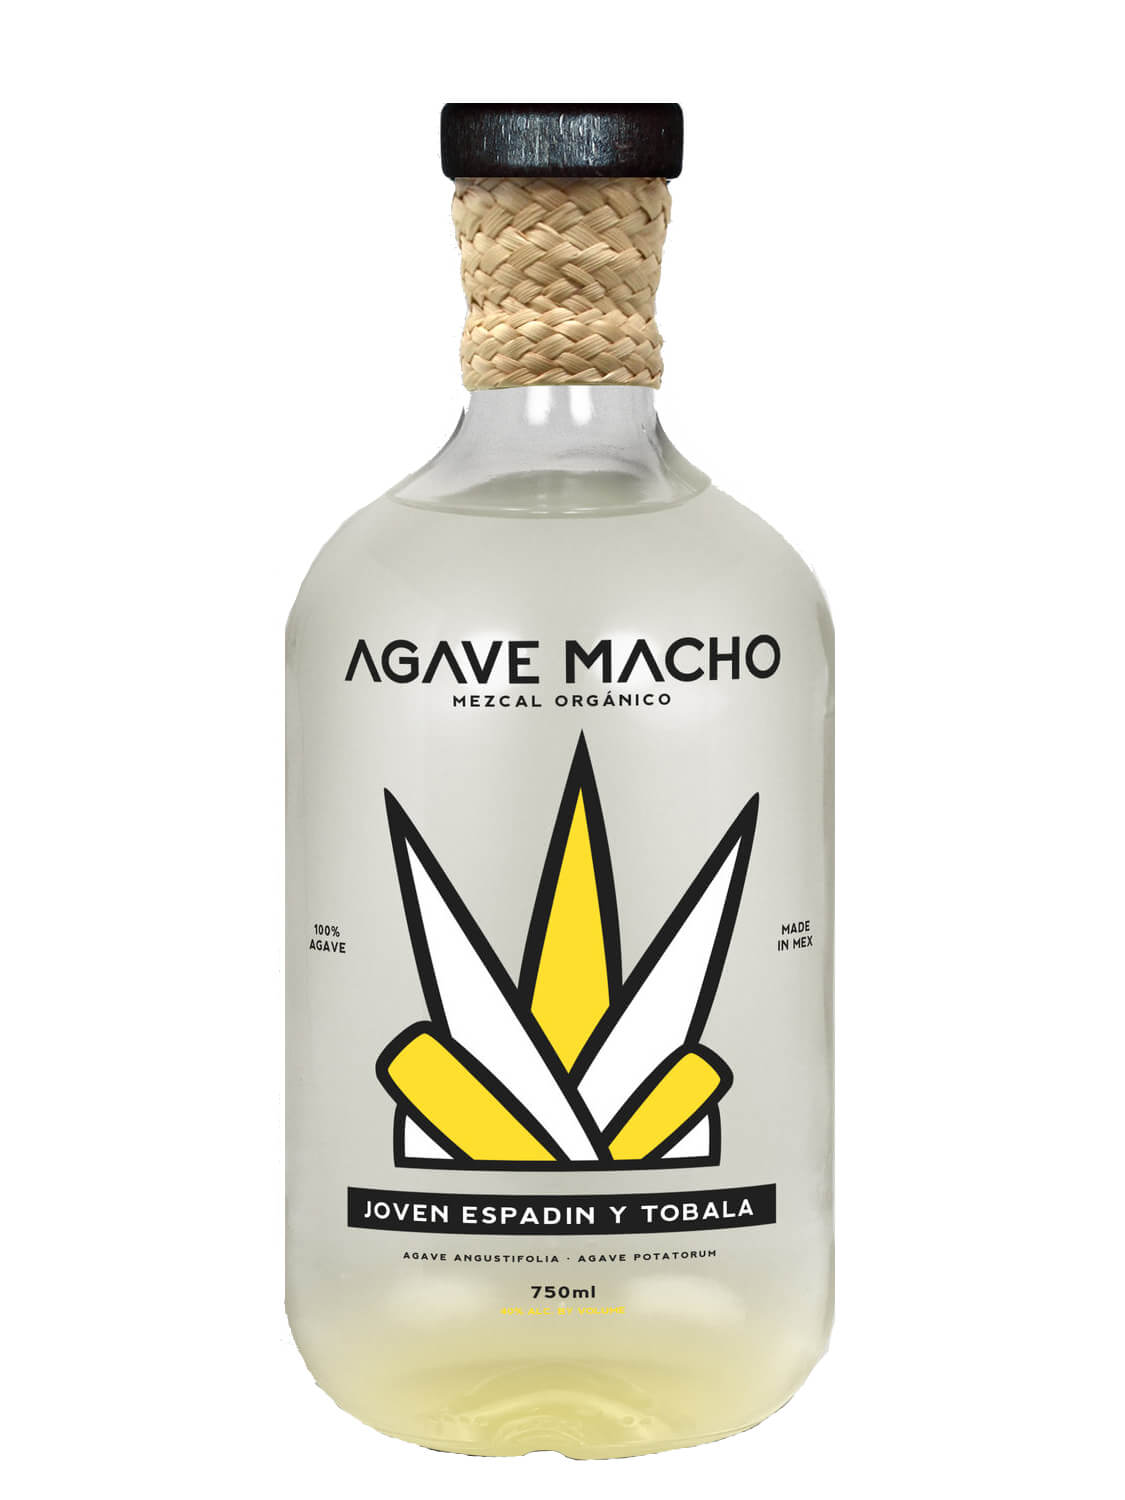 A bottle of Agave Macho Espadin-Tobala ensamble mezcal